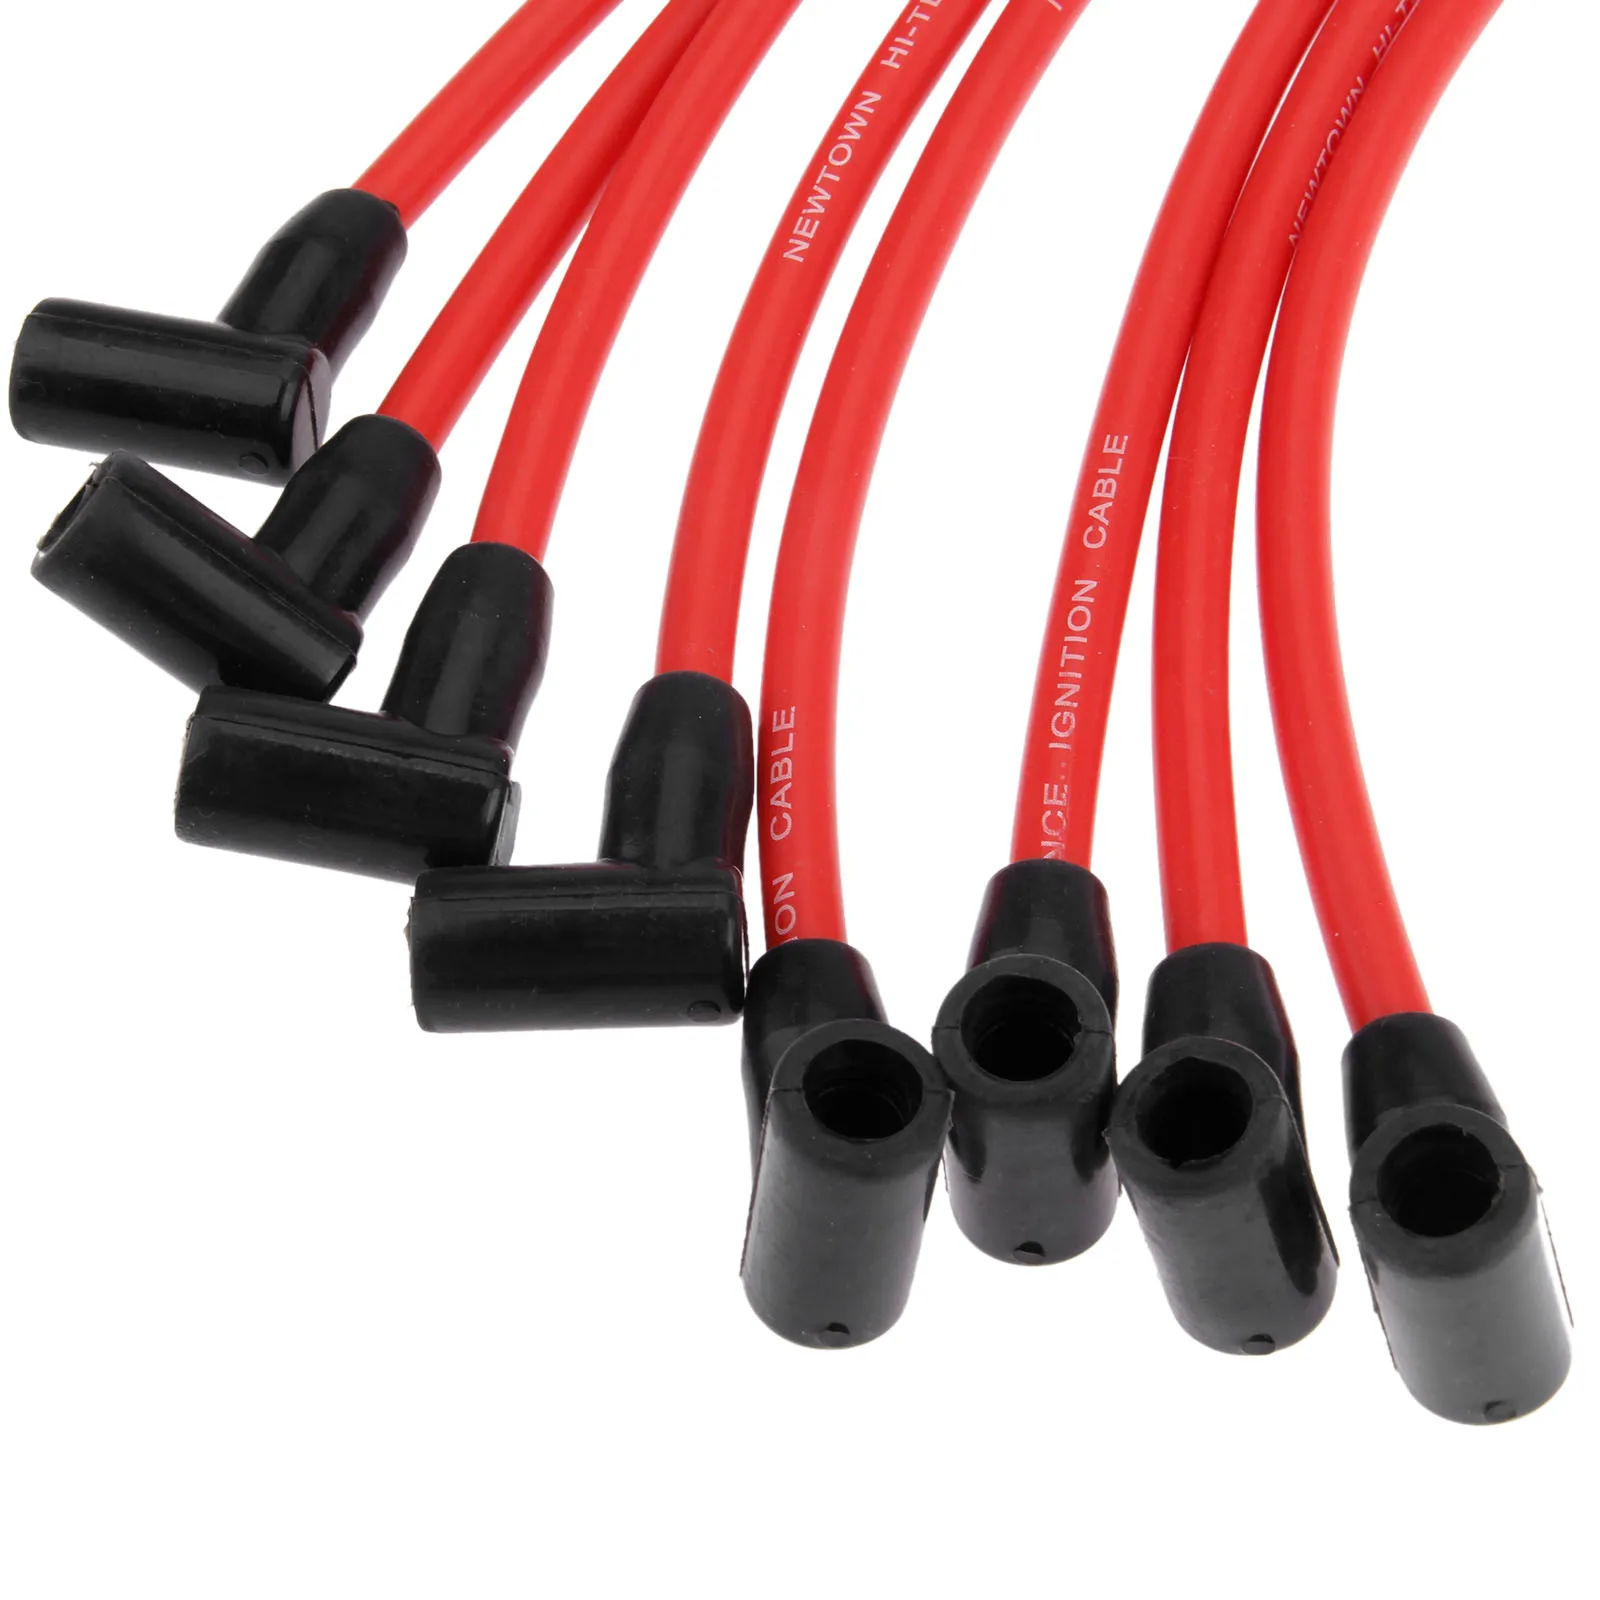 10 шт. 9 мм провода зажигания свечи зажигания провода кабель набор M12259R301 для Ford MUSTANG F-150 5.0L 5.8L V8 SBF 302 Вт 302 Виндзор